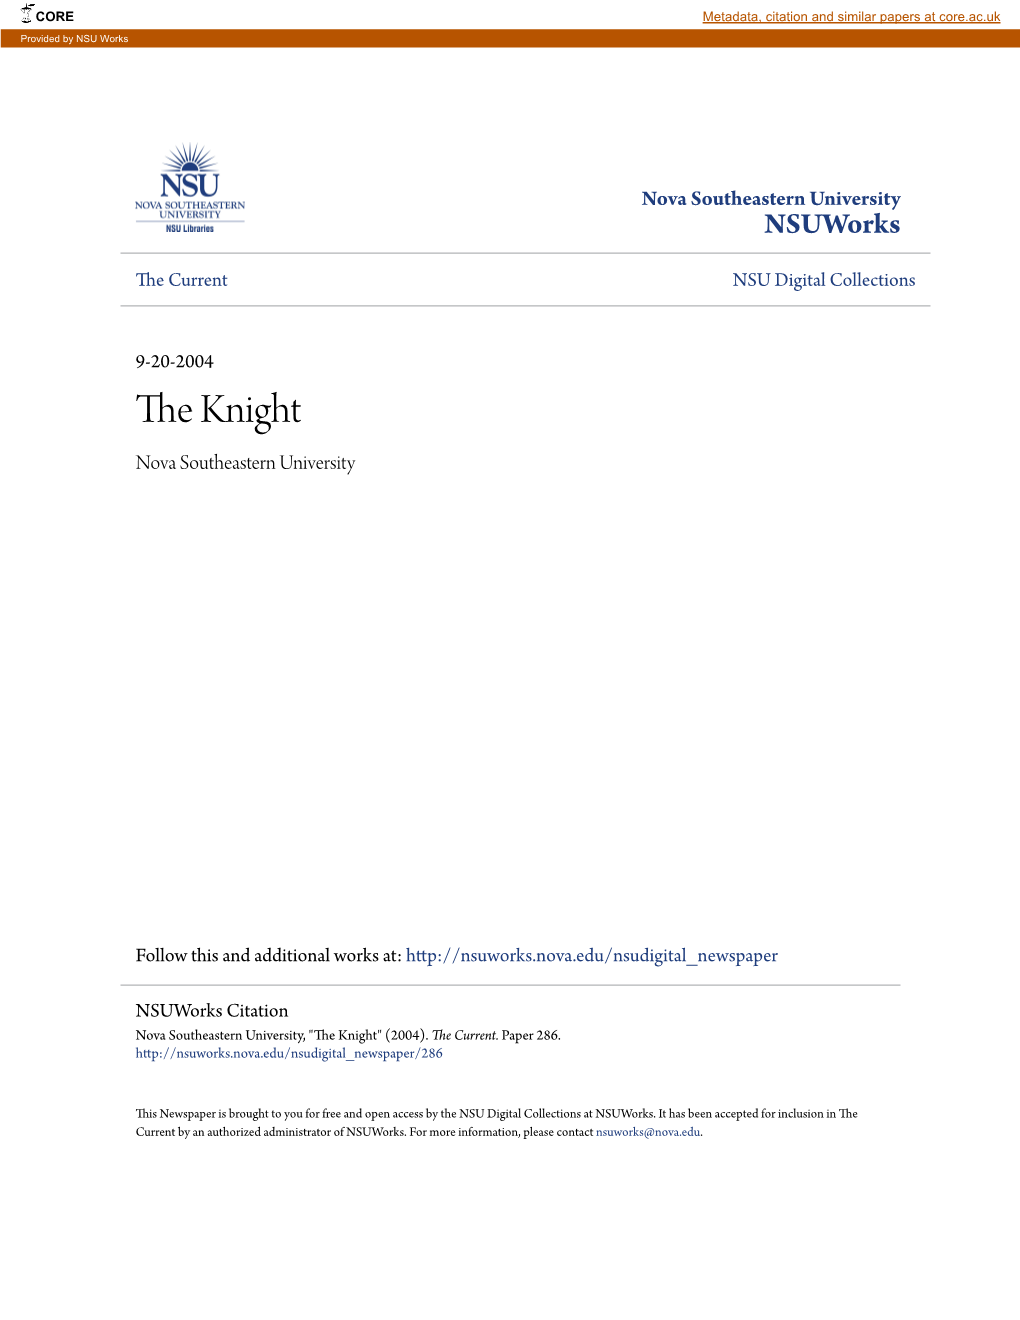 The Knight Nova Southeastern University